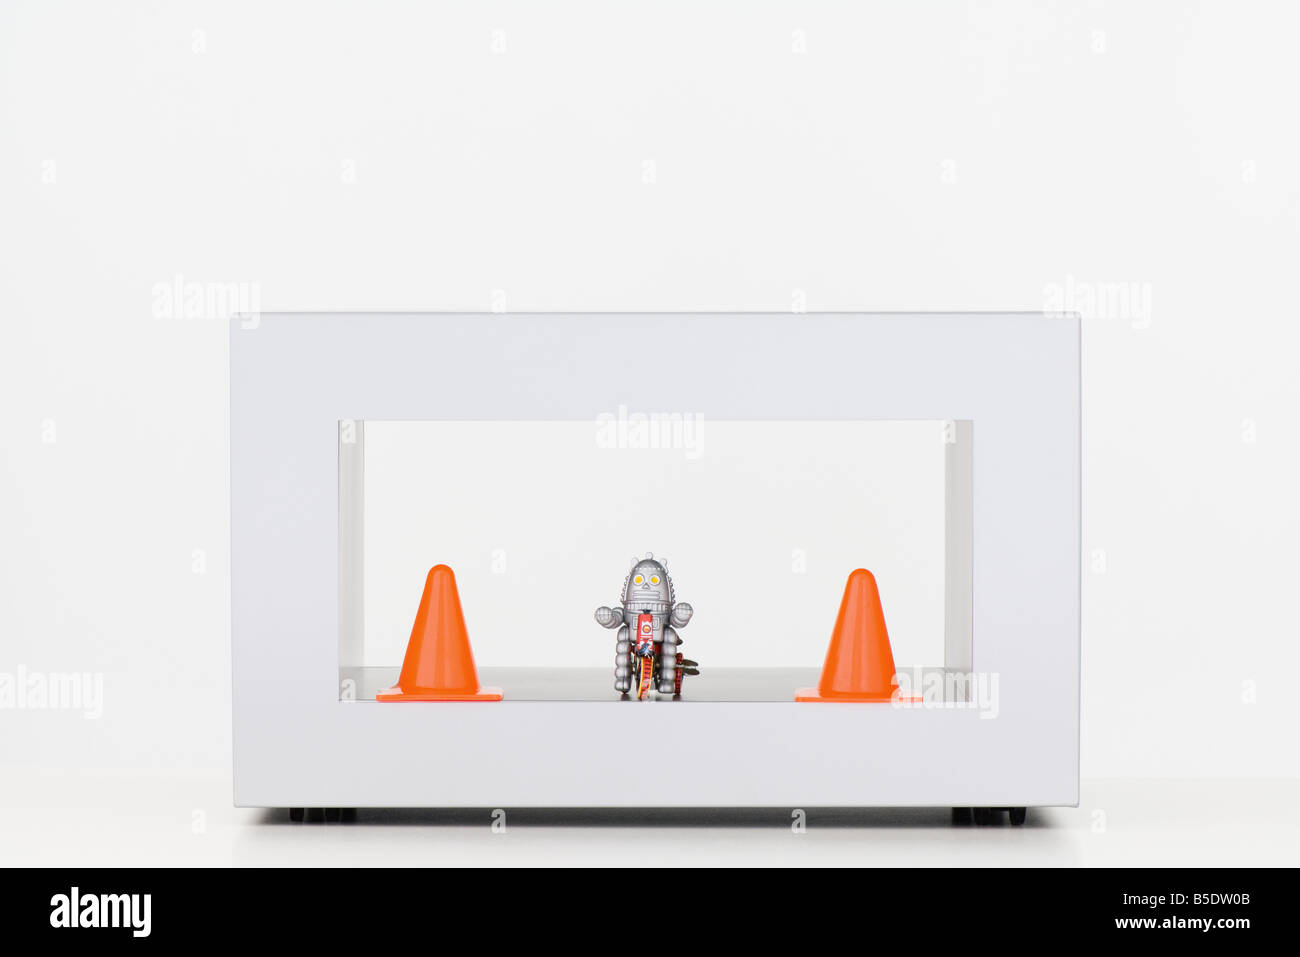 Robot jouet entre deux cônes de circulation Banque D'Images